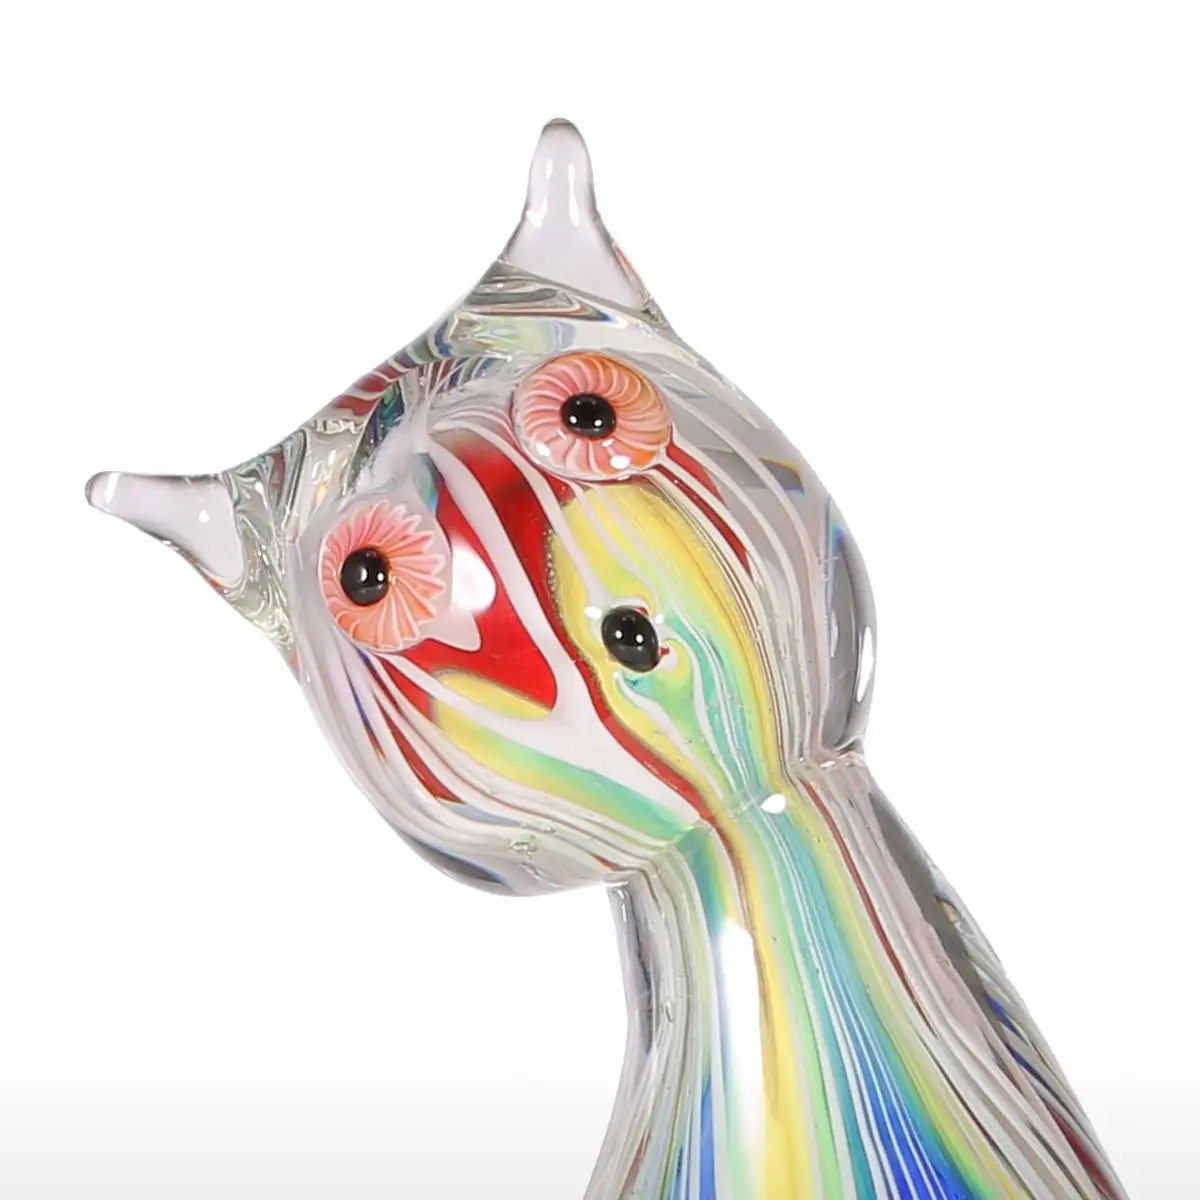 Стеклянная скульптура котенка, орнамент, стеклянный котенок со сложными слоями и несколькими яркими цветами, фигурка животного, ручной работы, домашний декор